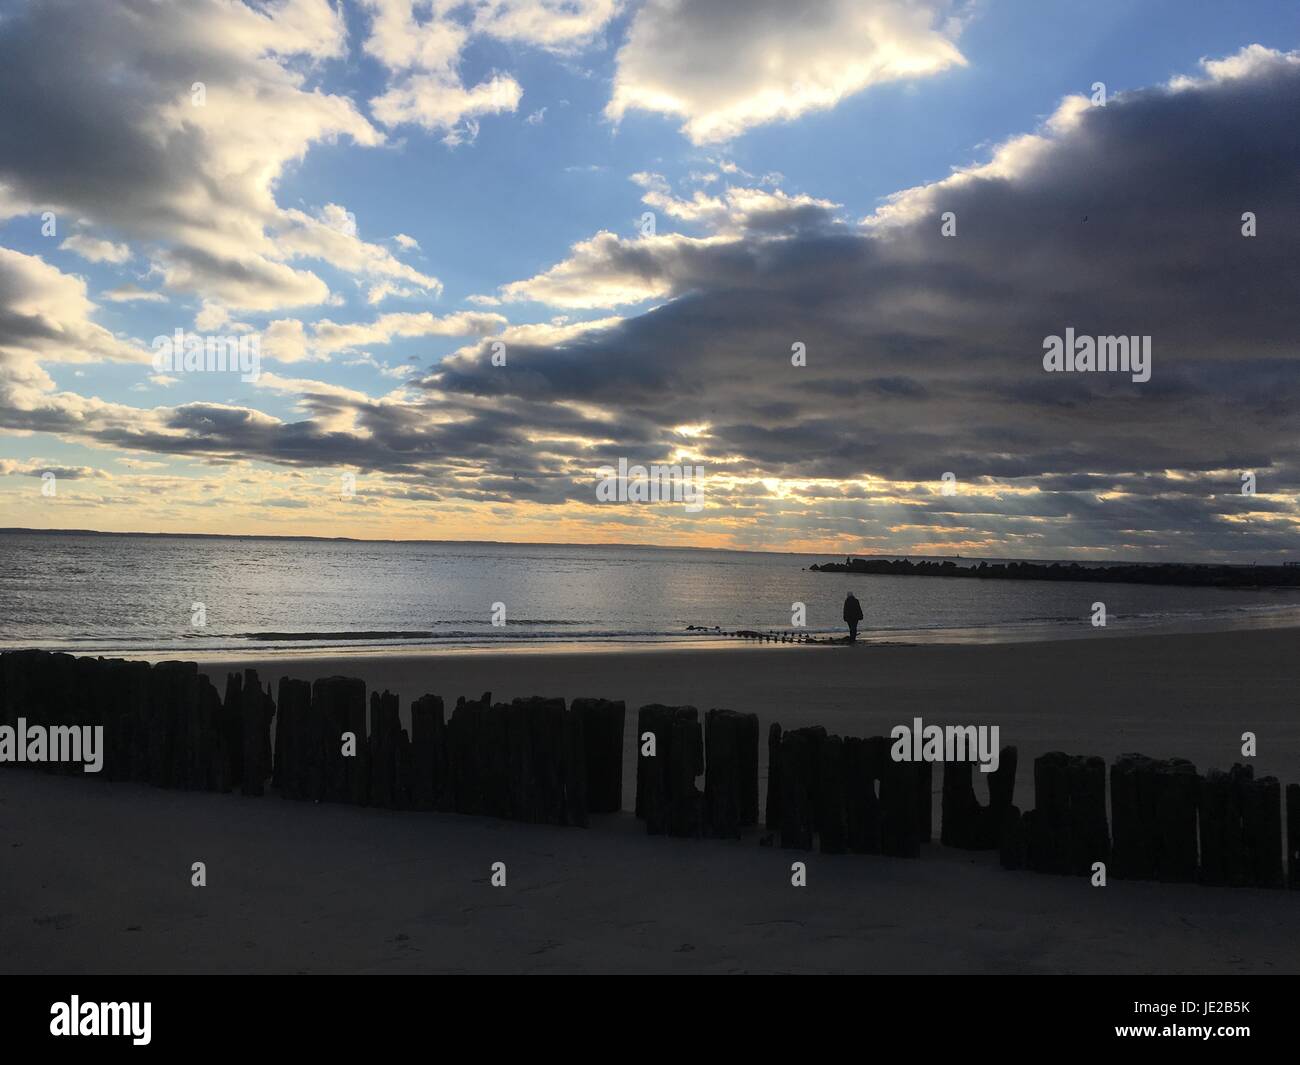 La persona cammina da sola lungo la spiaggia sabbiosa al tramonto. Le nuvole drammatiche si sweep attraverso il cielo. Resti di un molo di legno, una fila di pali di legno intemperie Foto Stock